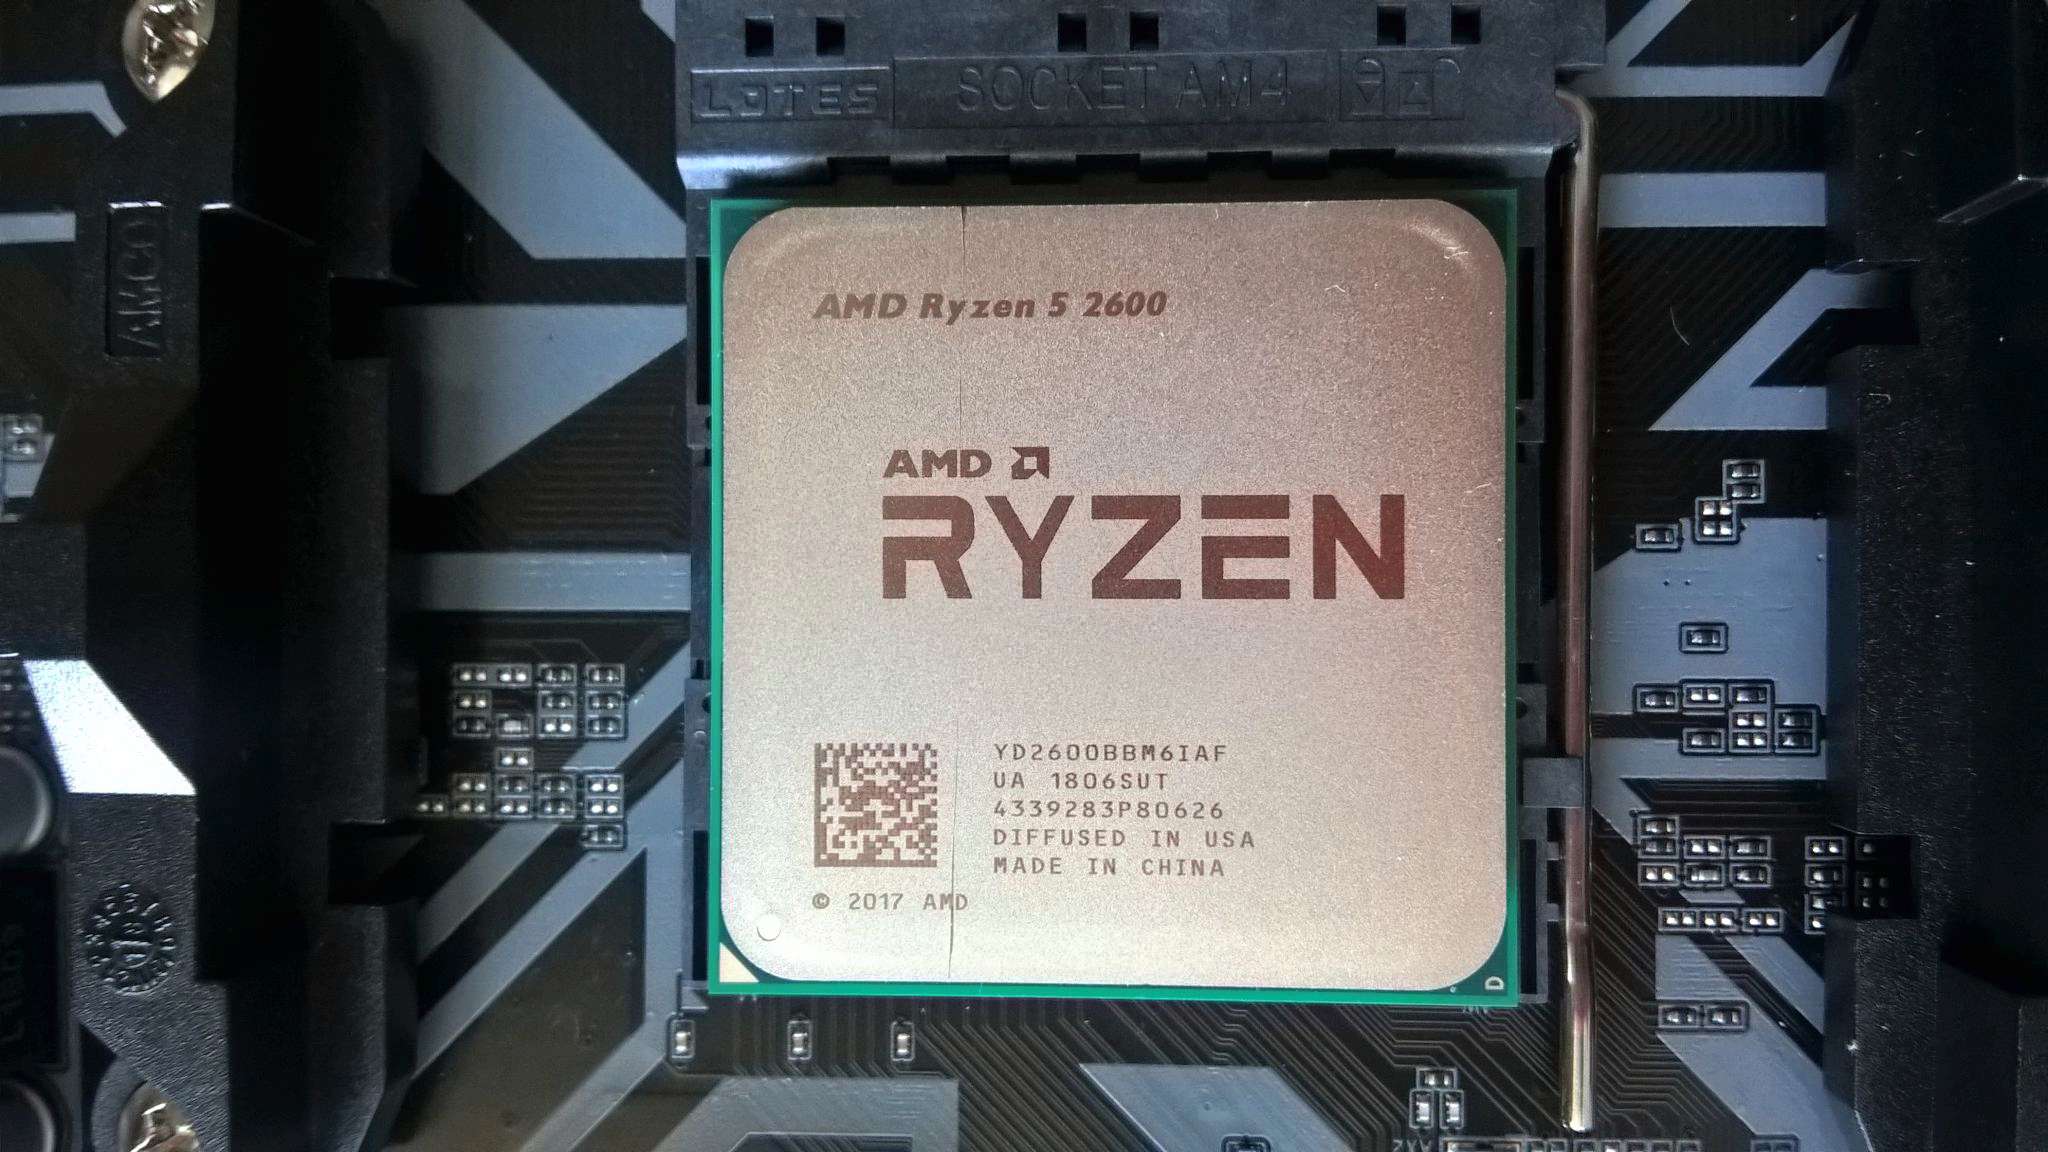 Amd ryzen 5600 6 core processor. AMD 5 2600. Процессор AMD Ryzen 5 2600 Six Core. Ryzen 5 2600 16gb. Процессор AMD Ryzen 5 2600, socketam4, Box.